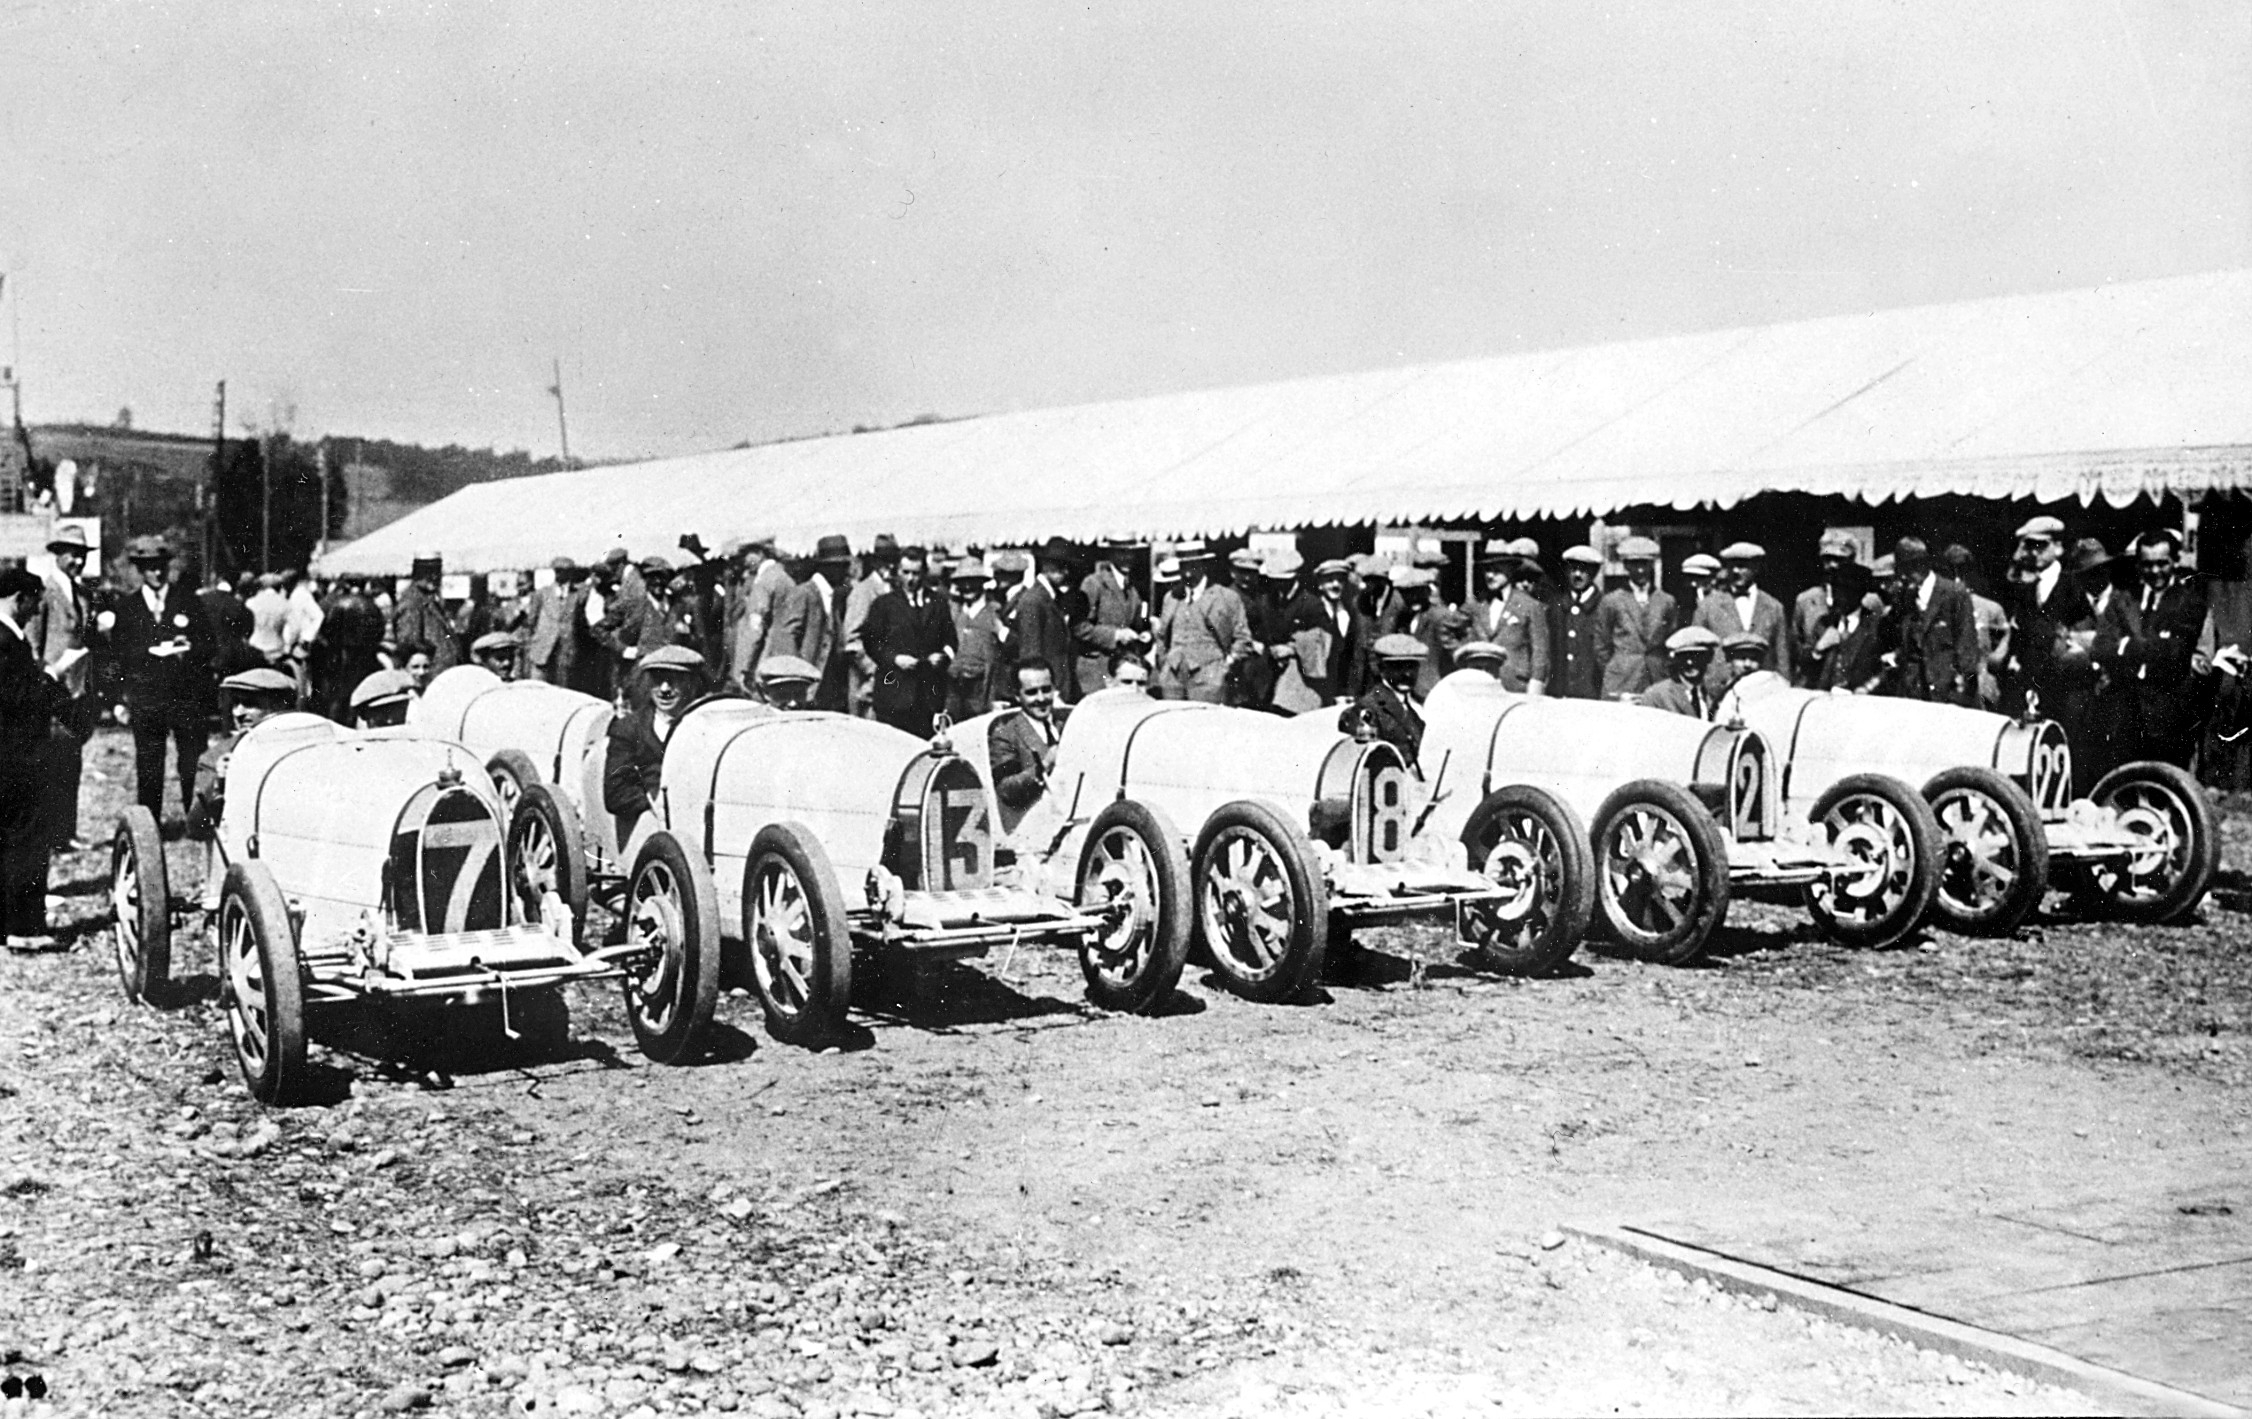 Five Bugatti Type 35s in the Bugatti line up for the 1924 Grand Prix of France.